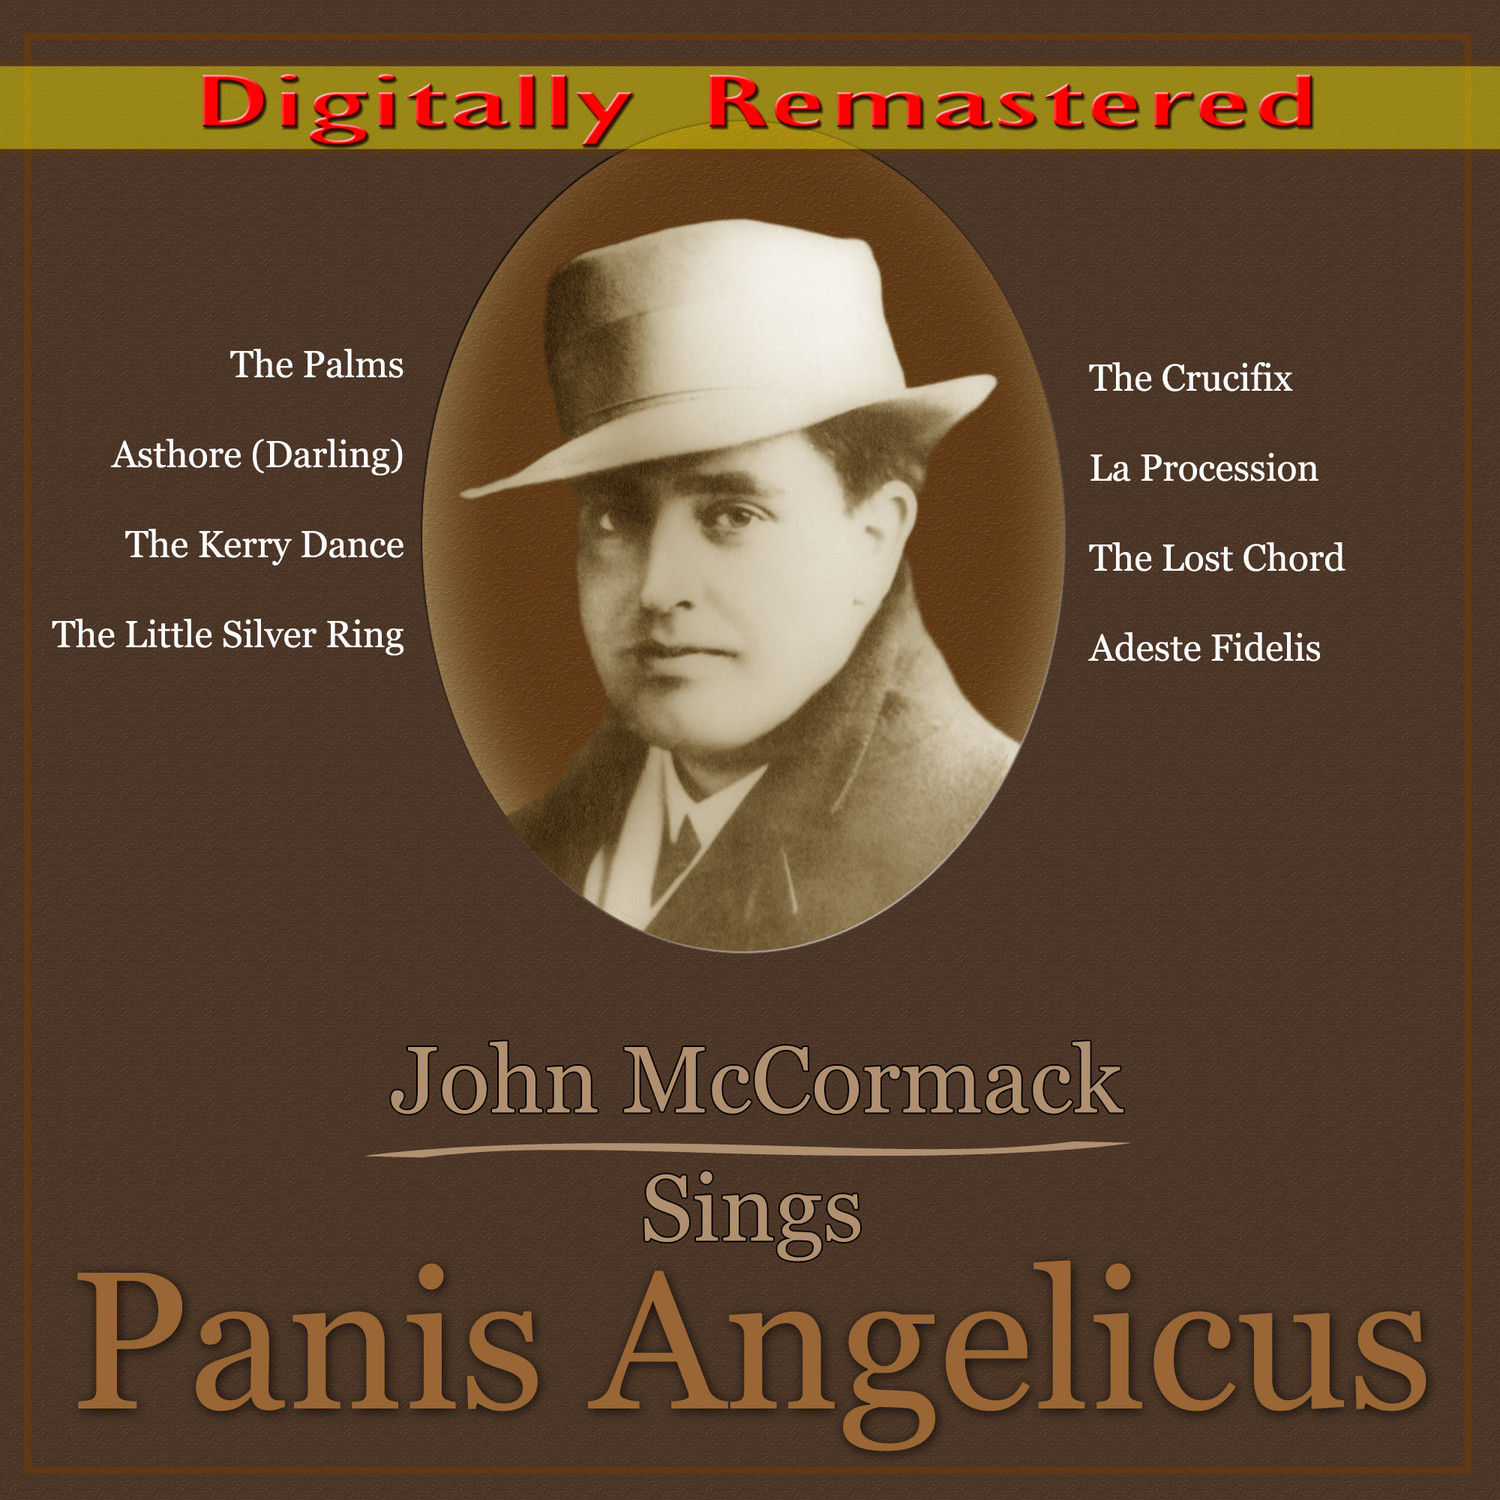 John McCormack Sings Panis Angelicus